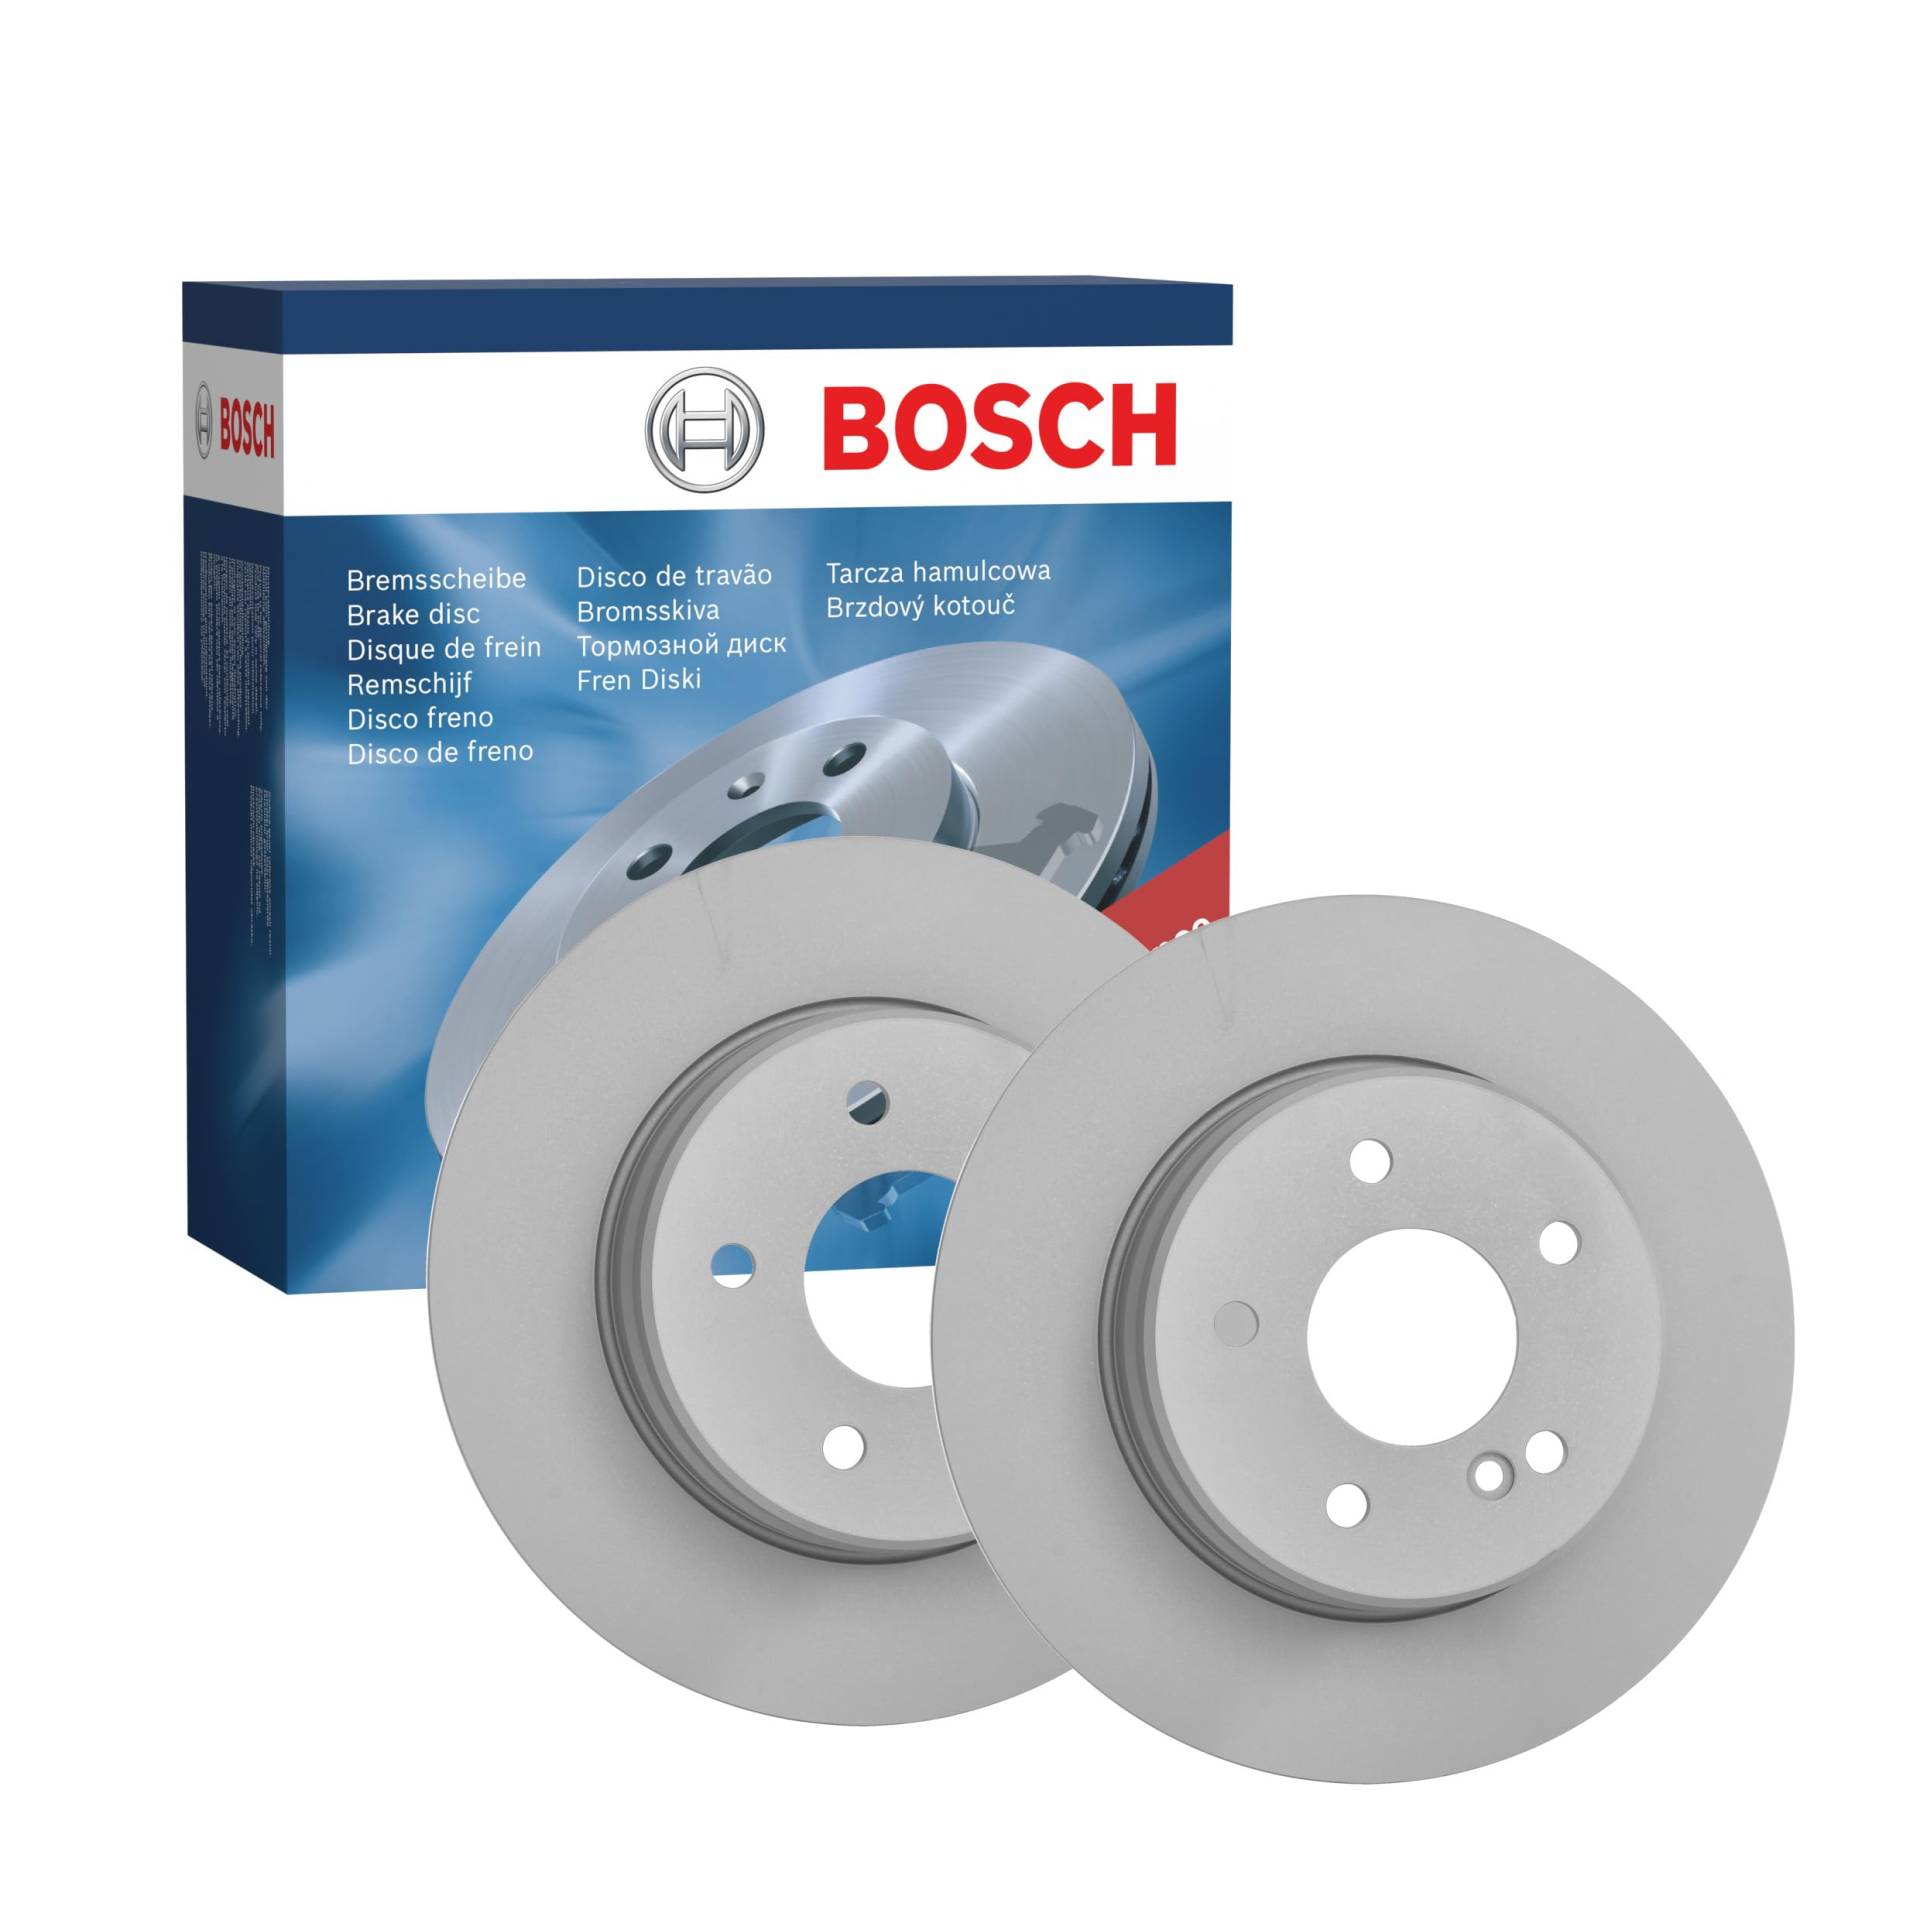 Bosch BD2042 Bremsscheiben - Hinterachse - ECE-R90 Zertifizierung - zwei Bremsscheiben pro Set von Bosch Automotive